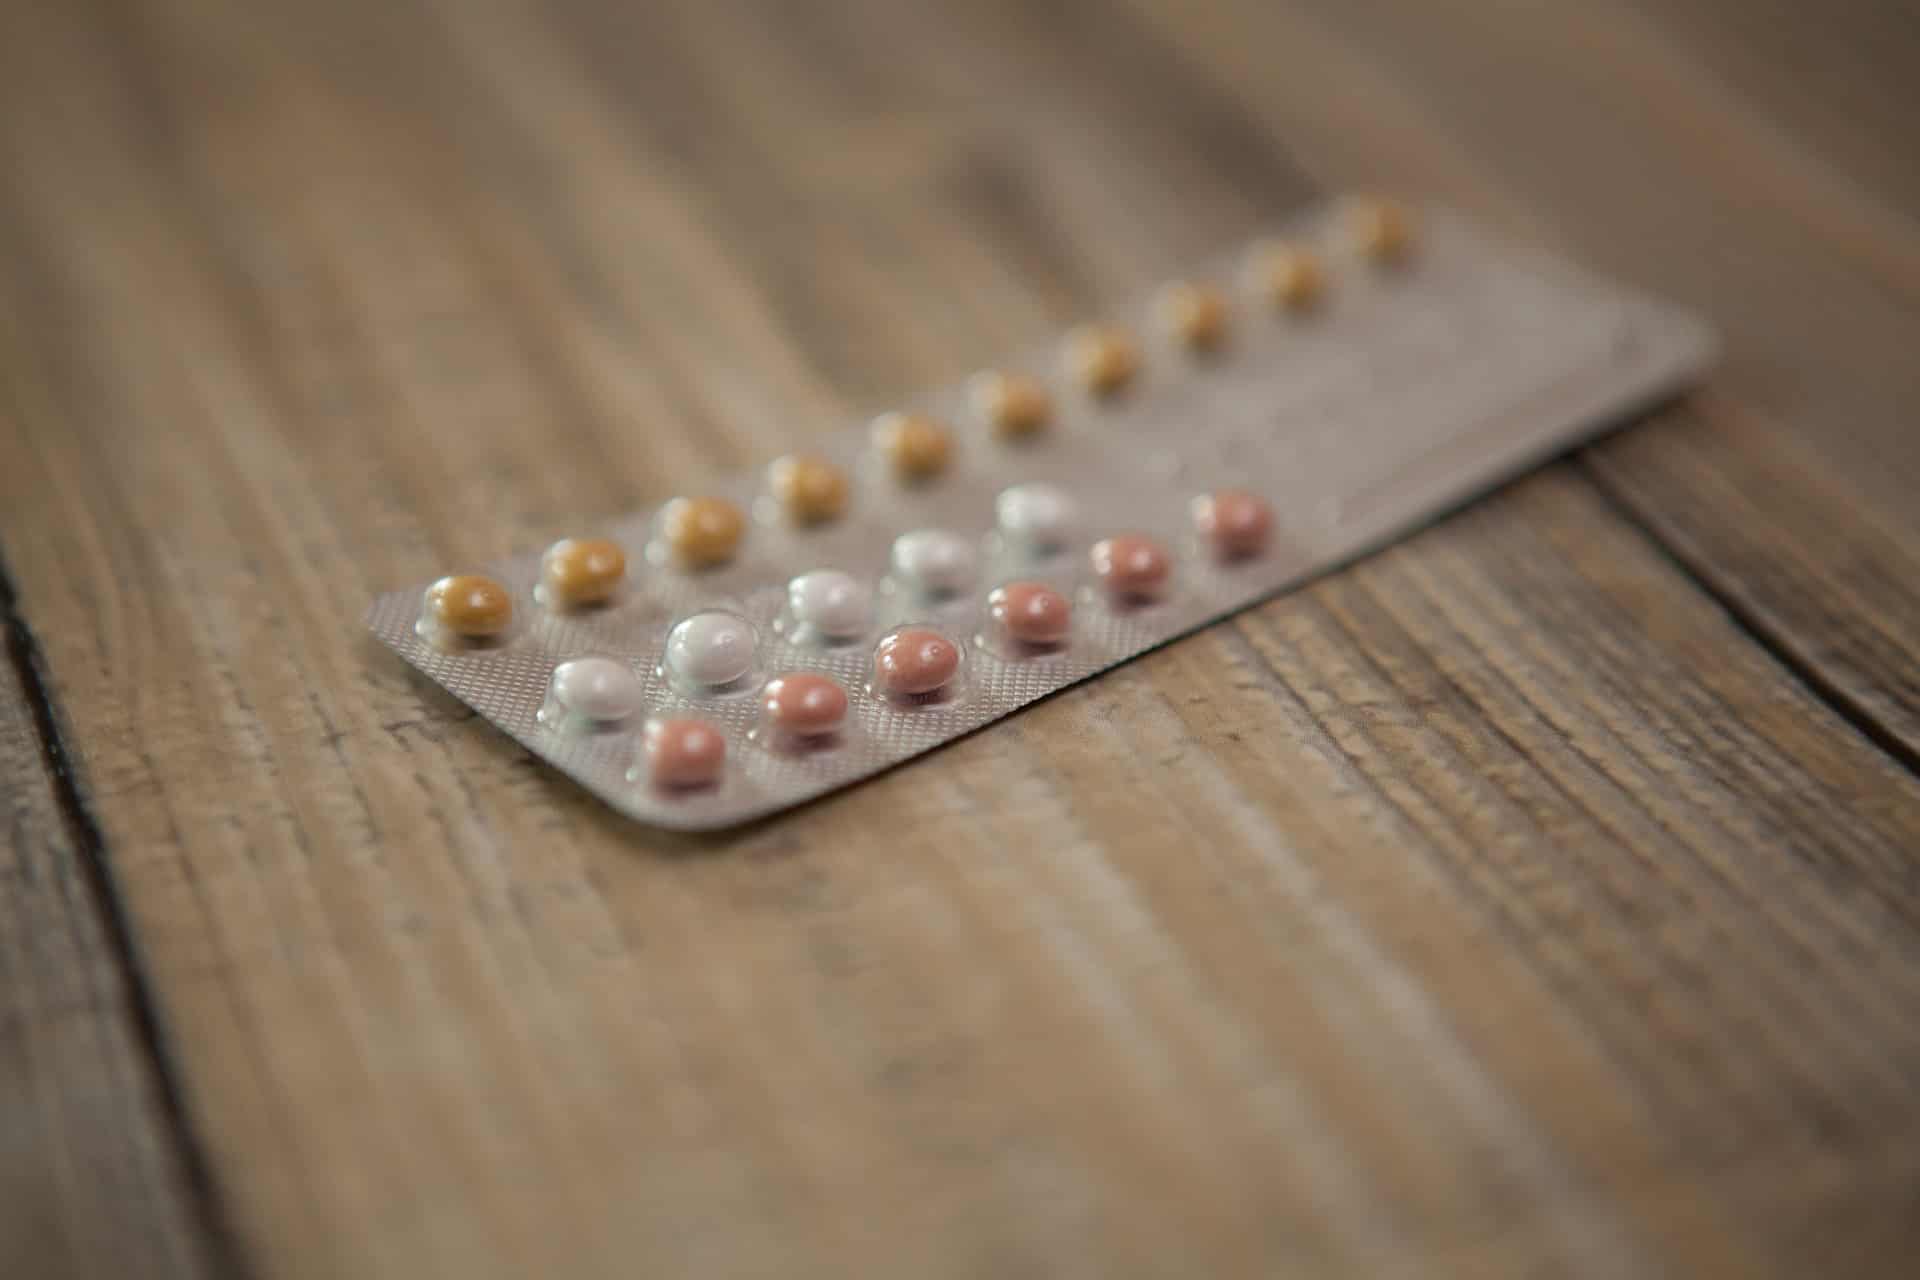 Os anticoncepcionais aumentam o risco de câncer de mama